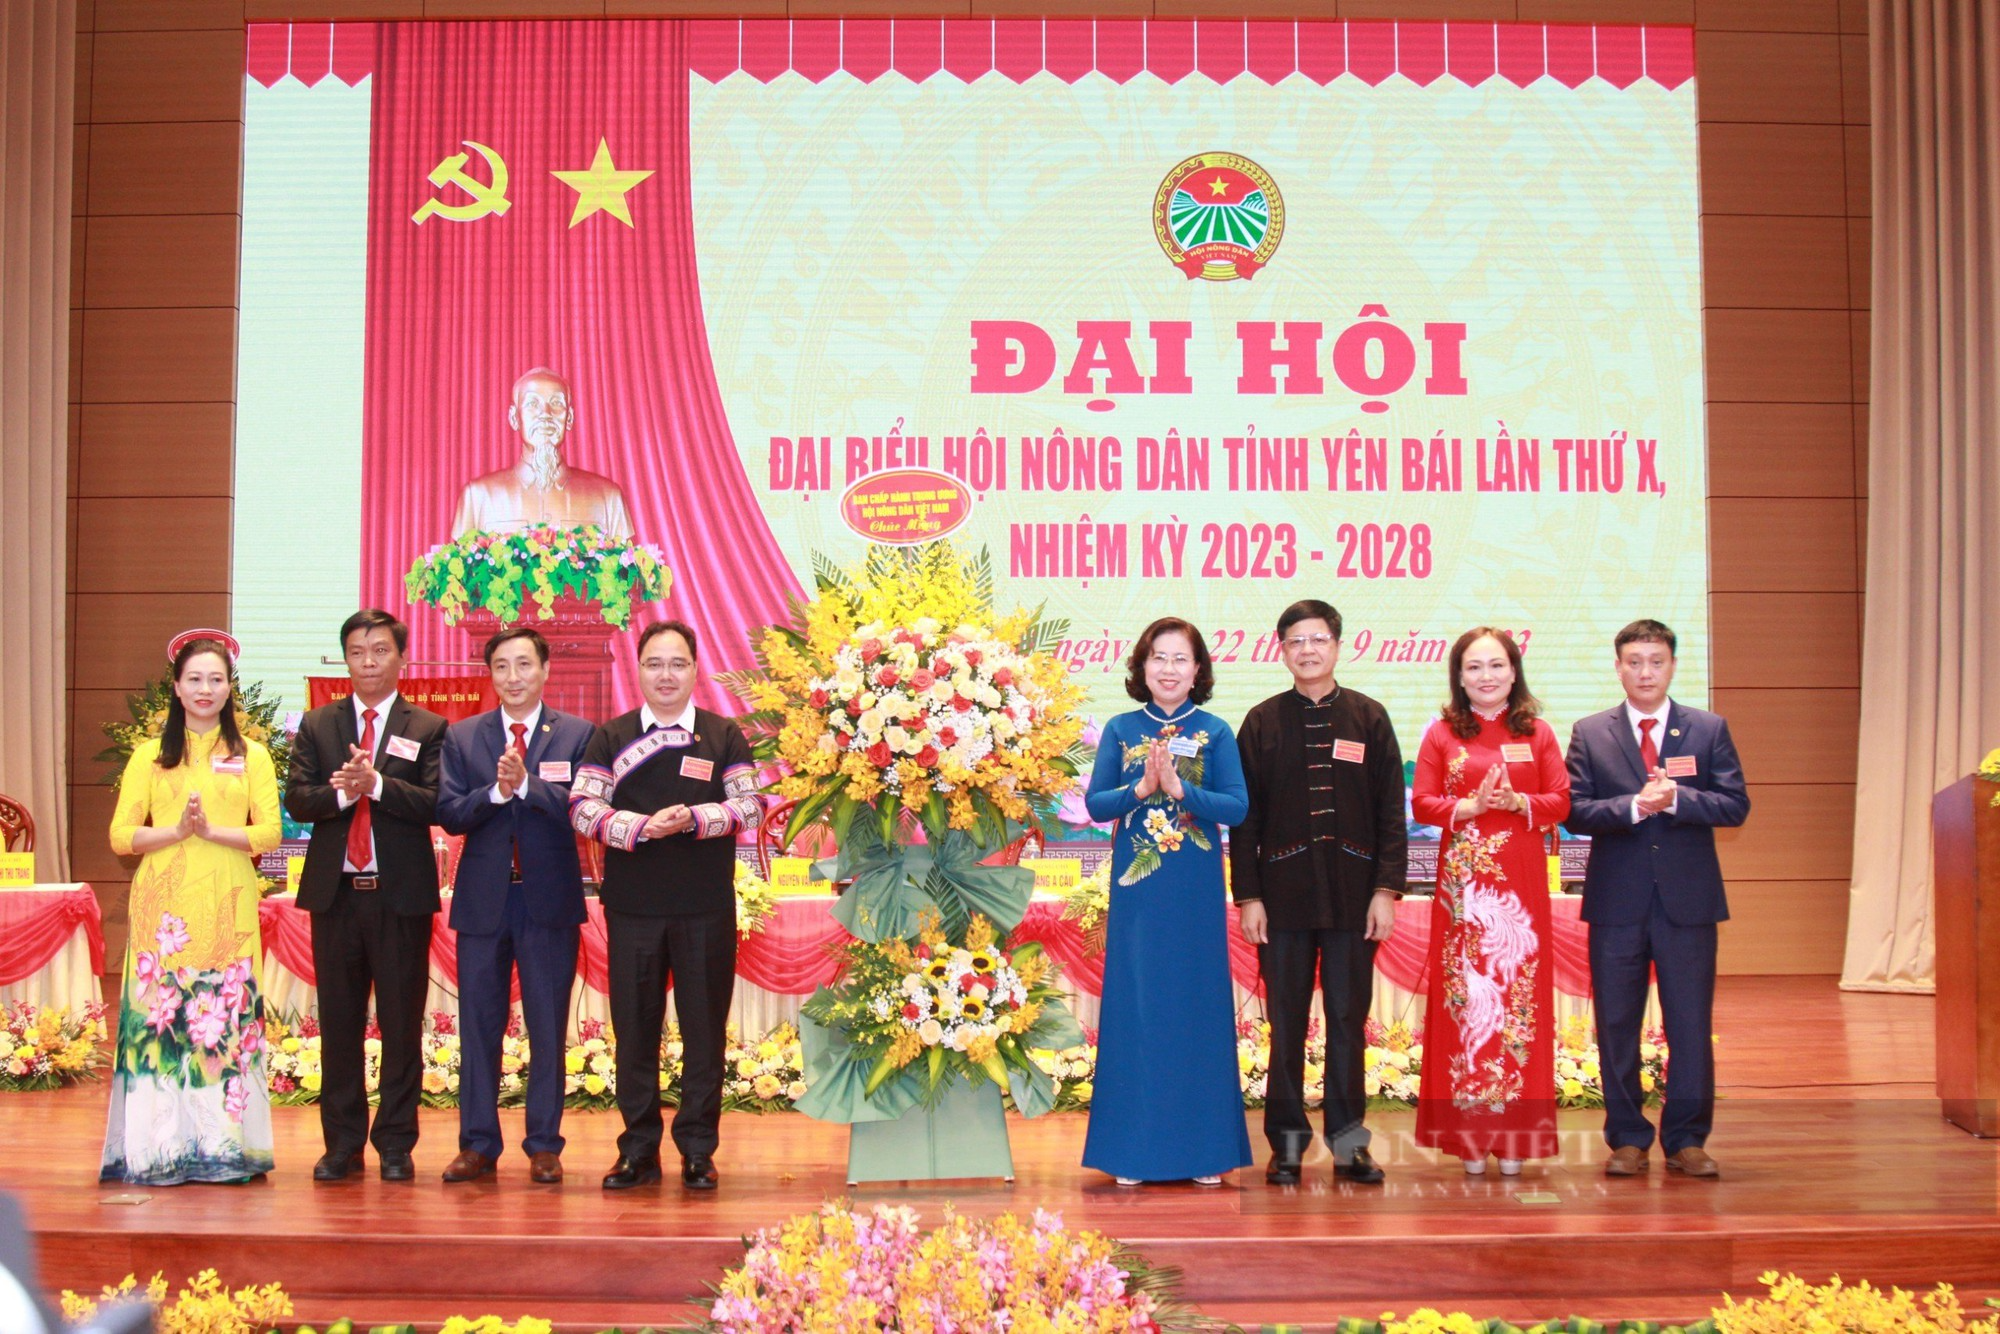 Phó Chủ tịch Hội NDVN Bùi Thị Thơm: Hội Nông dân Yên Bái vận động hội viên phát huy bản sắc dân tộc- Ảnh 2.